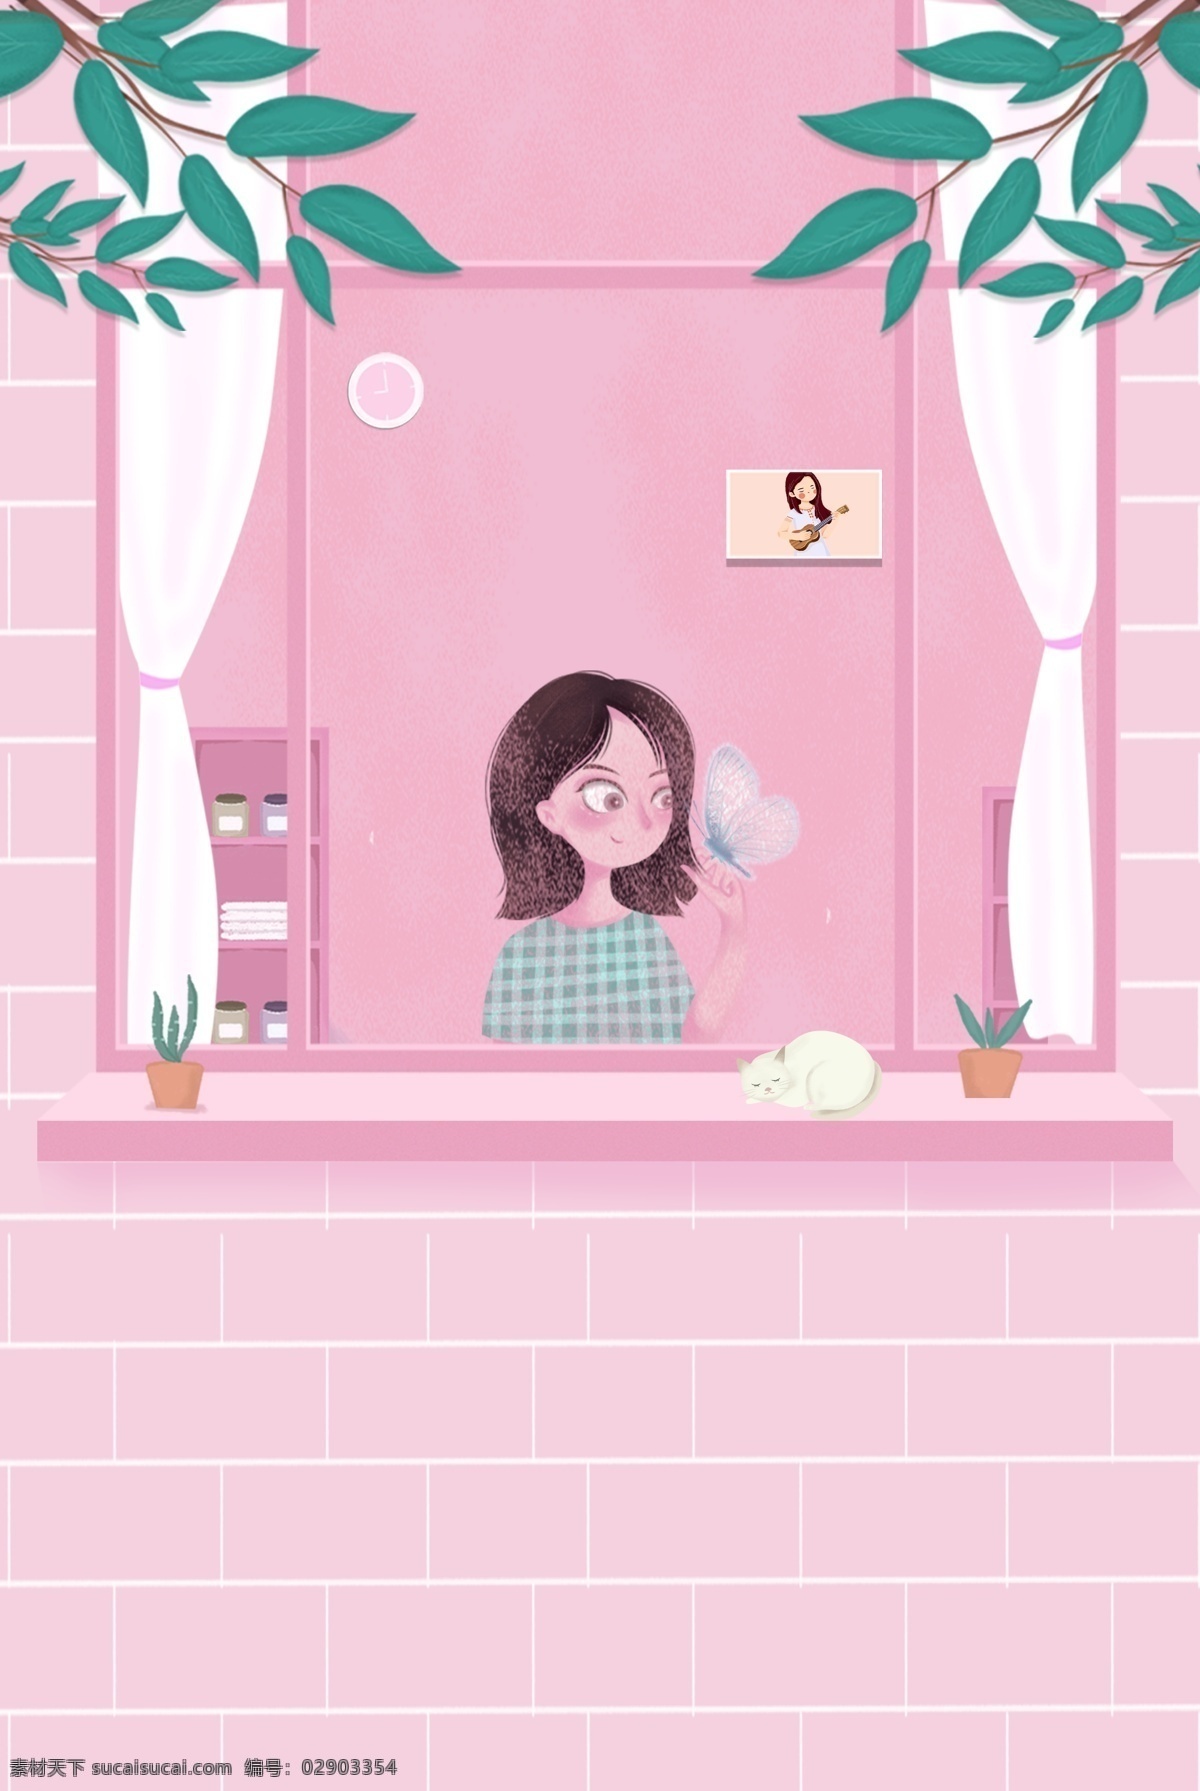 粉色 清新 窗 女孩 手绘 海报 窗边 猫咪 插画风 促销海报 服装促销